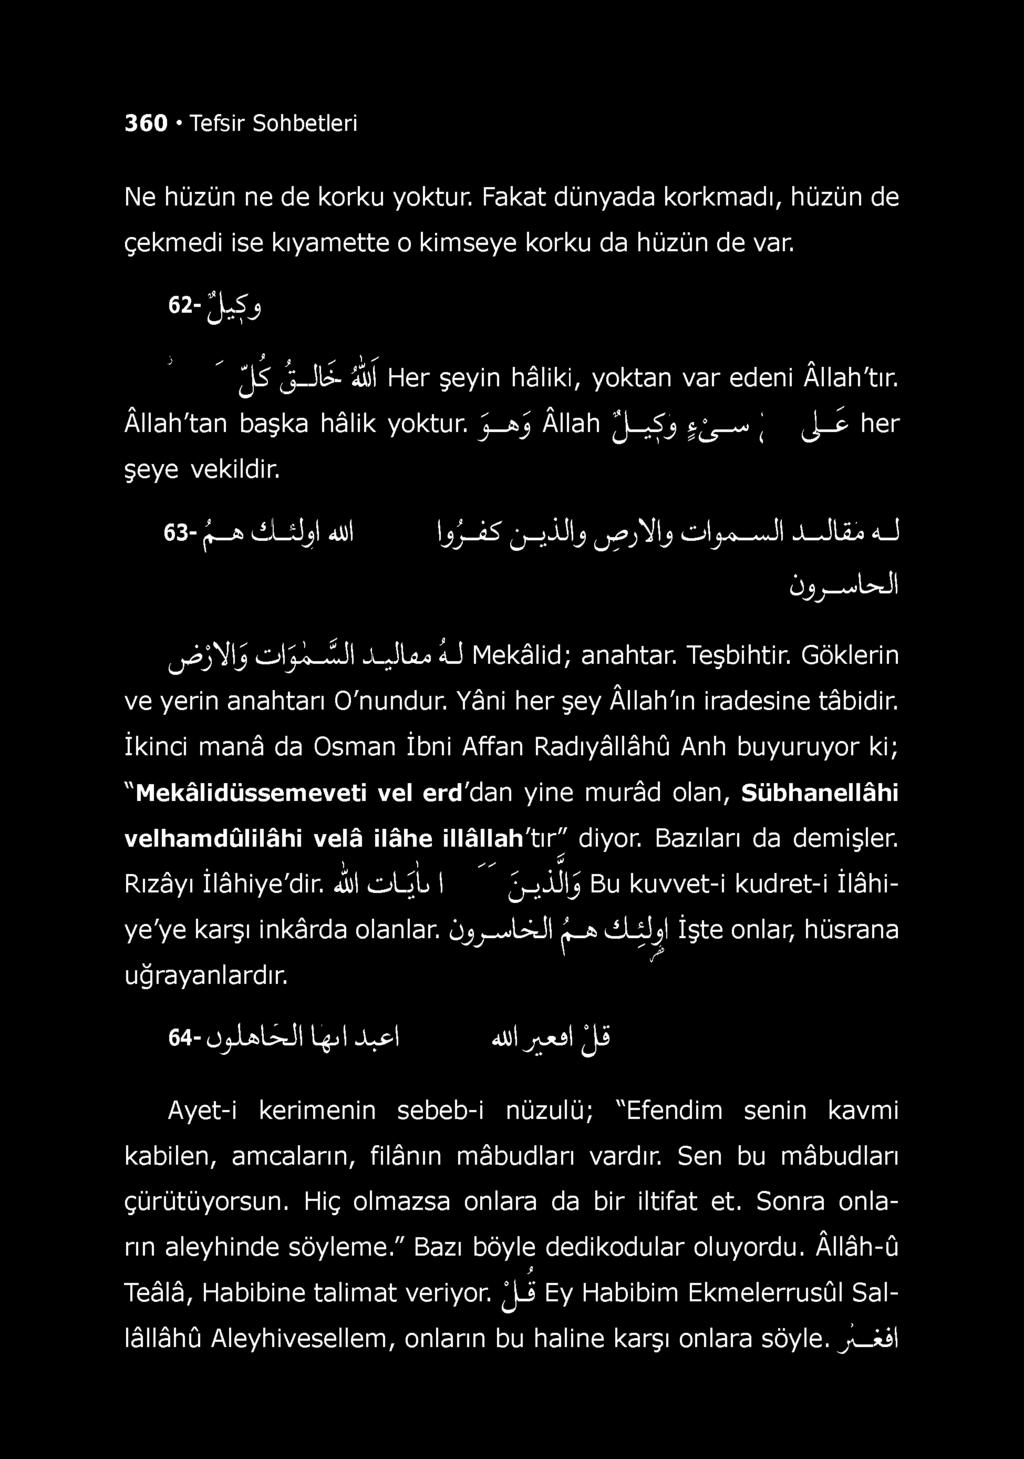 İkinci manâ da Osman İbni Affan RadıyâNâhû Anh buyuruyor ki; "Mekâlidüssemeveti vel erd'dan yine murâd olan, SübhaneMâhi velhamdûlilâhi velâ ilâhe illâllah'tır" diyor. Bazıları da demişler.